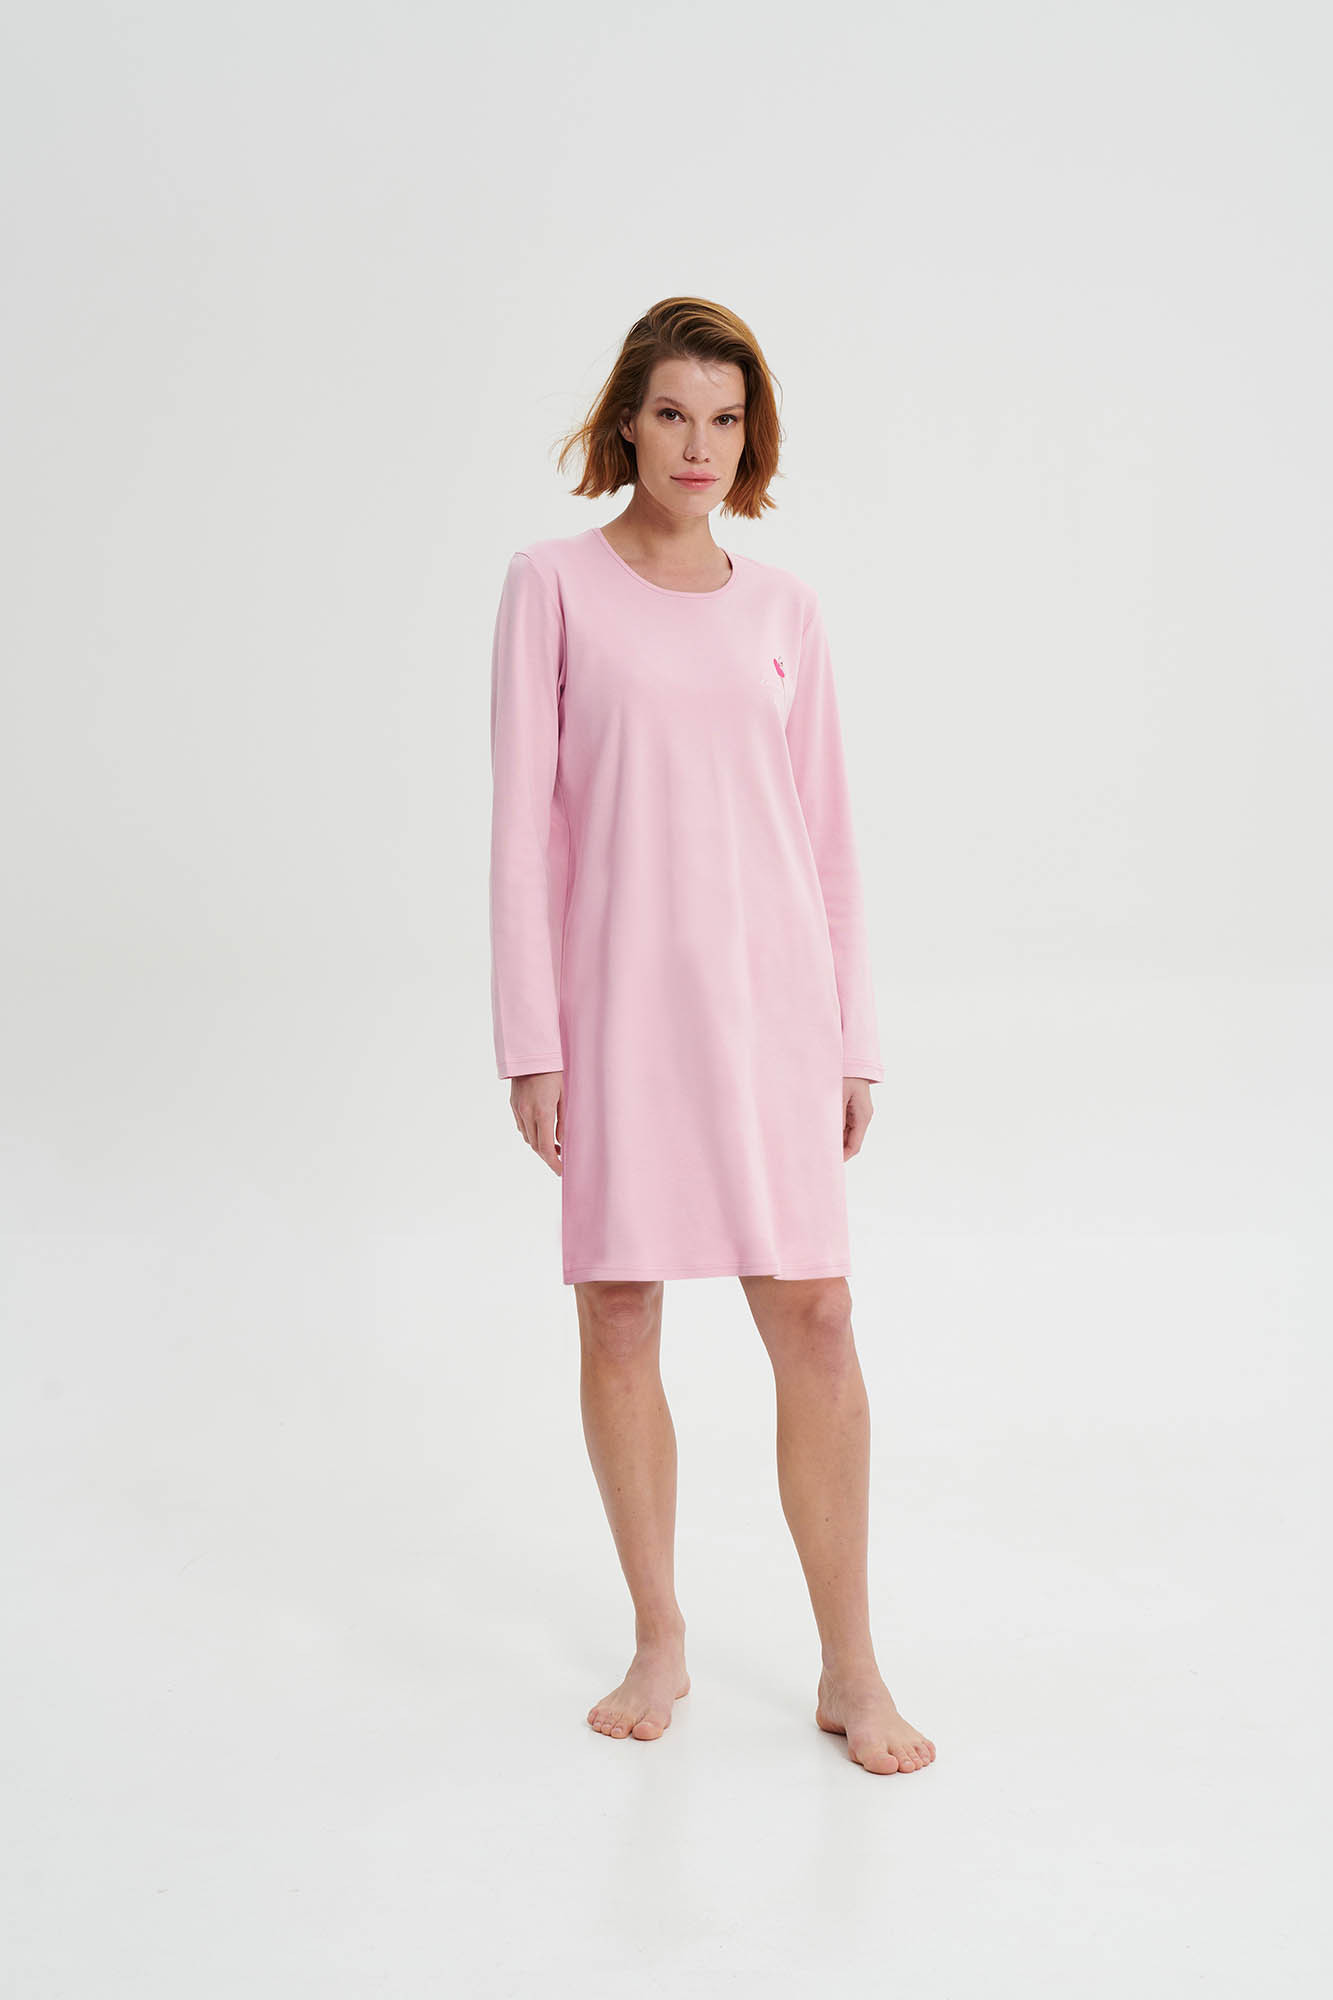 Vamp - Noční košile s dlouhým rukávem 19456 - Vamp pink nectar L